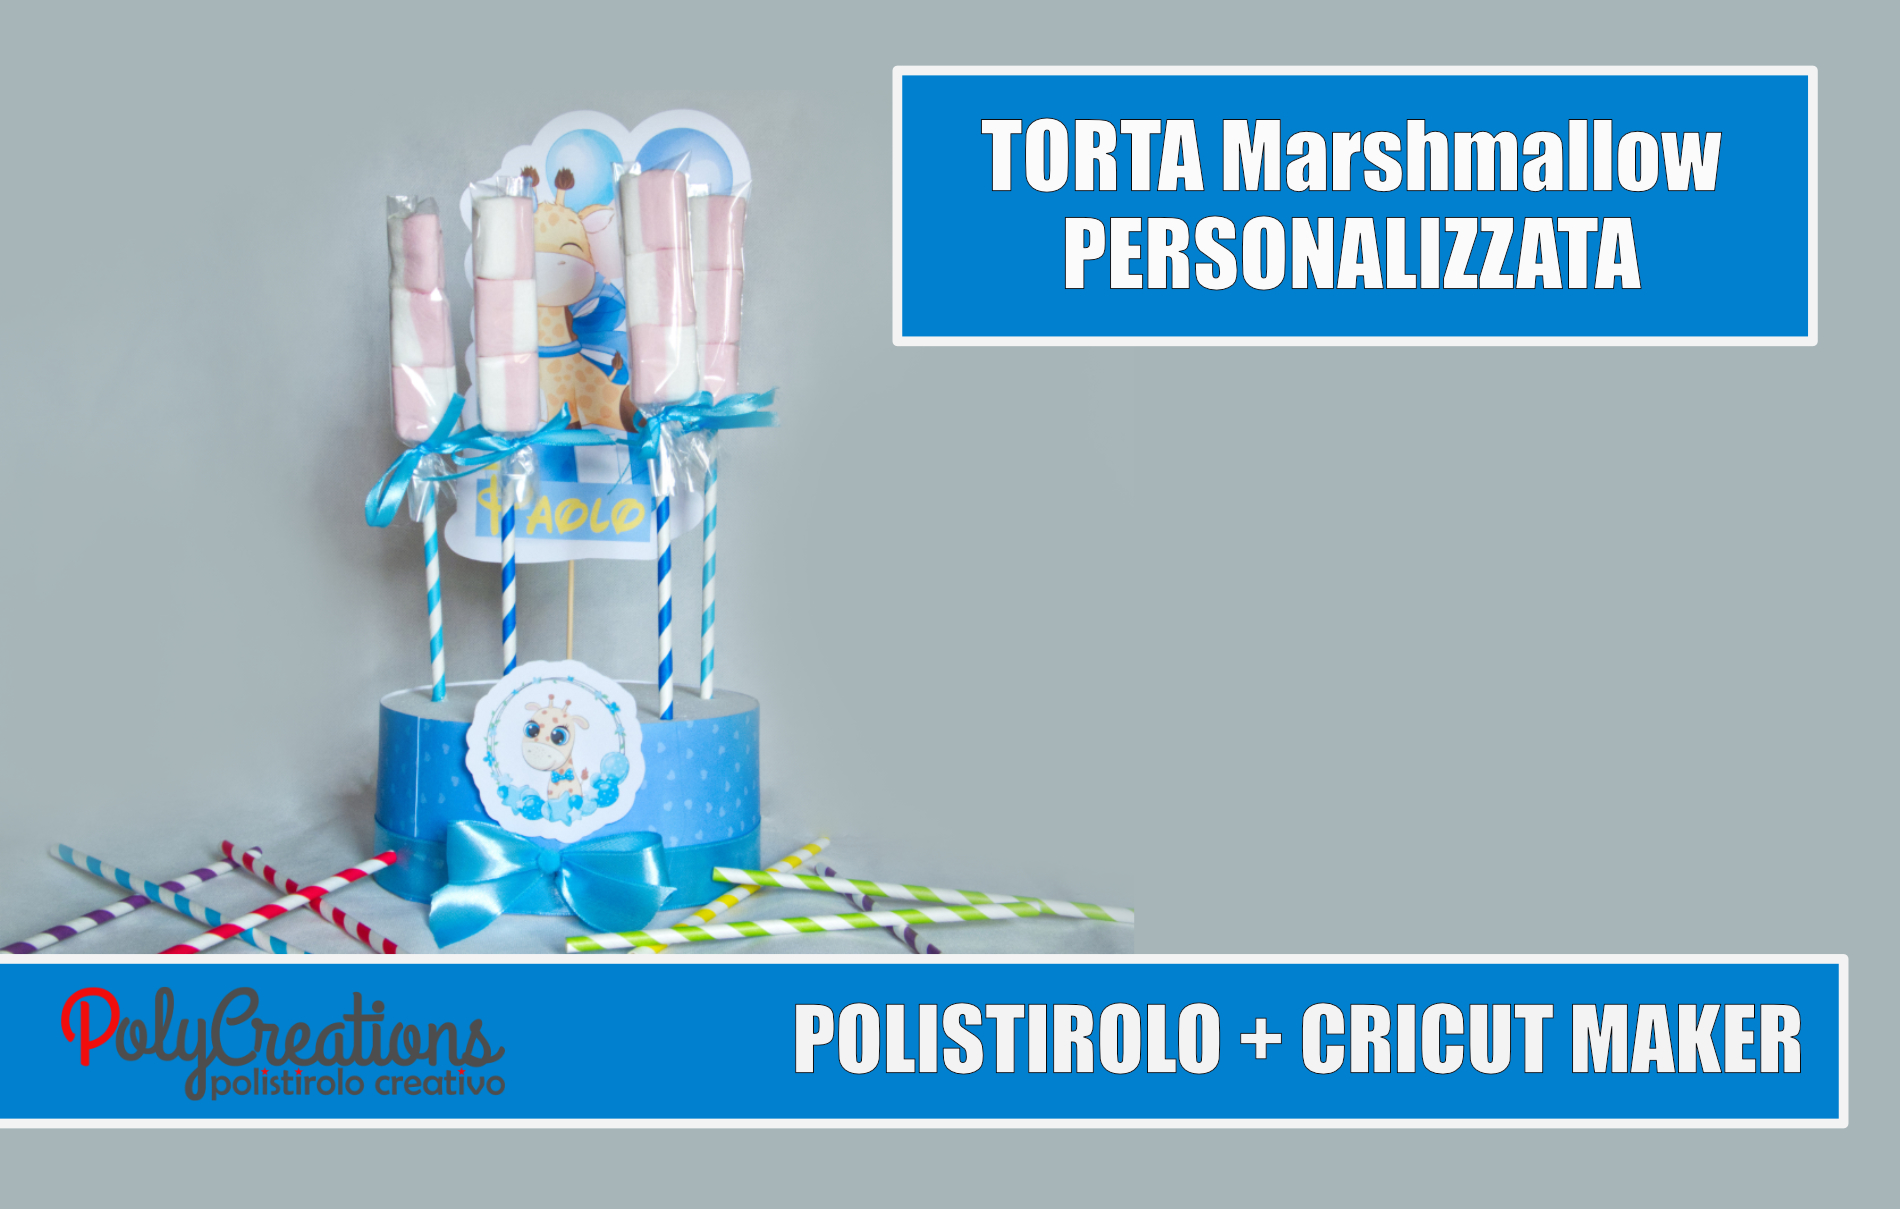 TORTA Marshmallow PARTY POLISTIROLO